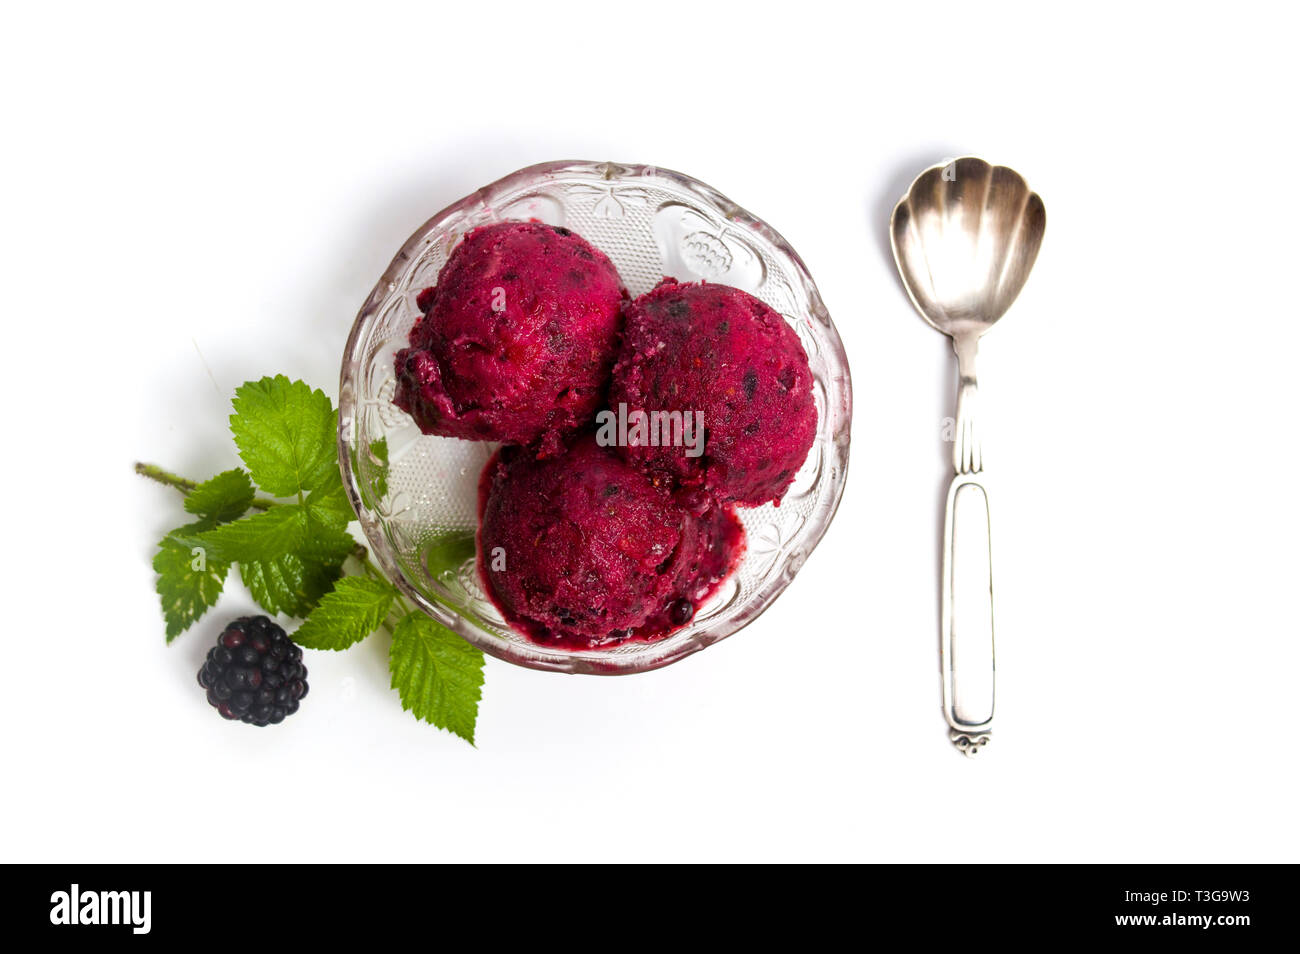 La crème glacée aux fruits Blackberry dans une tasse isolated on white Banque D'Images